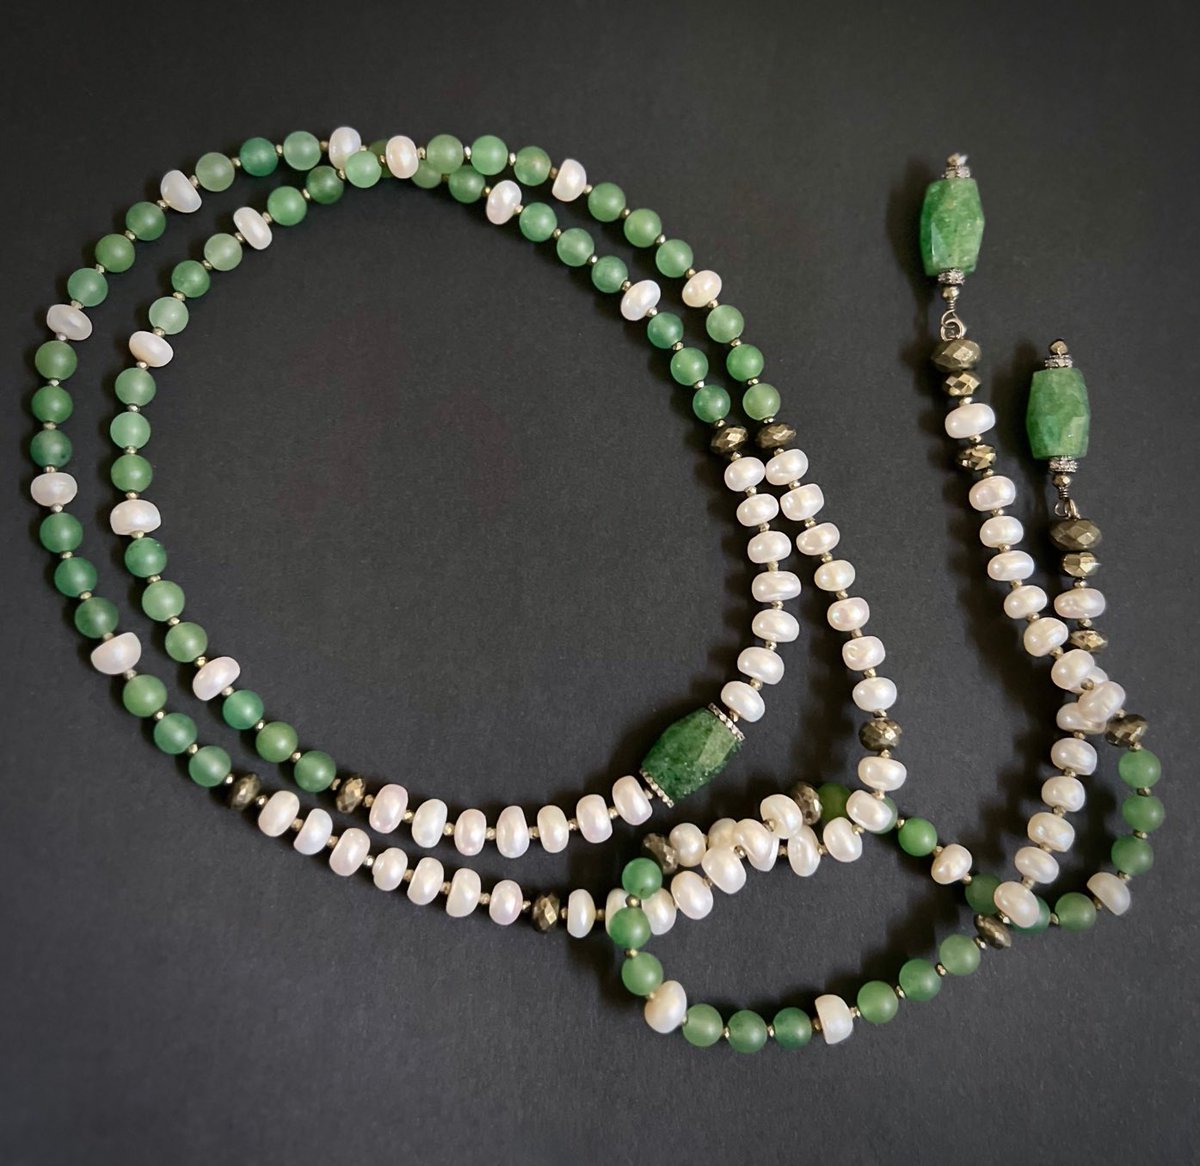 Beaded Gemstone Lariat Necklace | Rope Necklace  #pakbeadeddesigns  #etsy #gemstone #beadedlariat #green  #quartz #lariatnecklace #gemstonelariat #pavediamonds #pearls  #pyrite #lariat #beadednecklace  etsy.me/40db13i